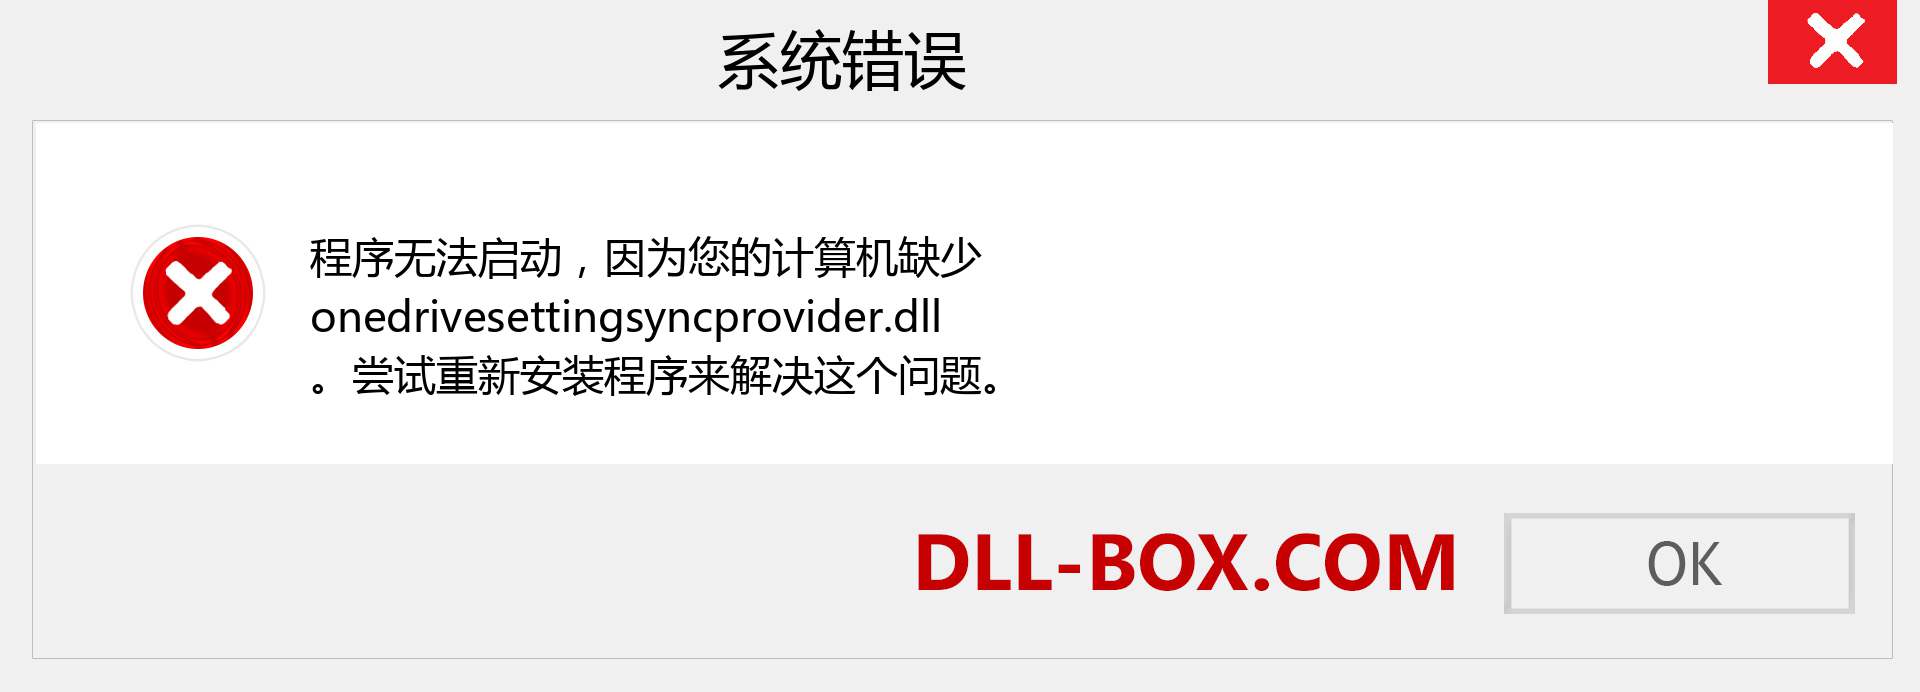 onedrivesettingsyncprovider.dll 文件丢失？。 适用于 Windows 7、8、10 的下载 - 修复 Windows、照片、图像上的 onedrivesettingsyncprovider dll 丢失错误